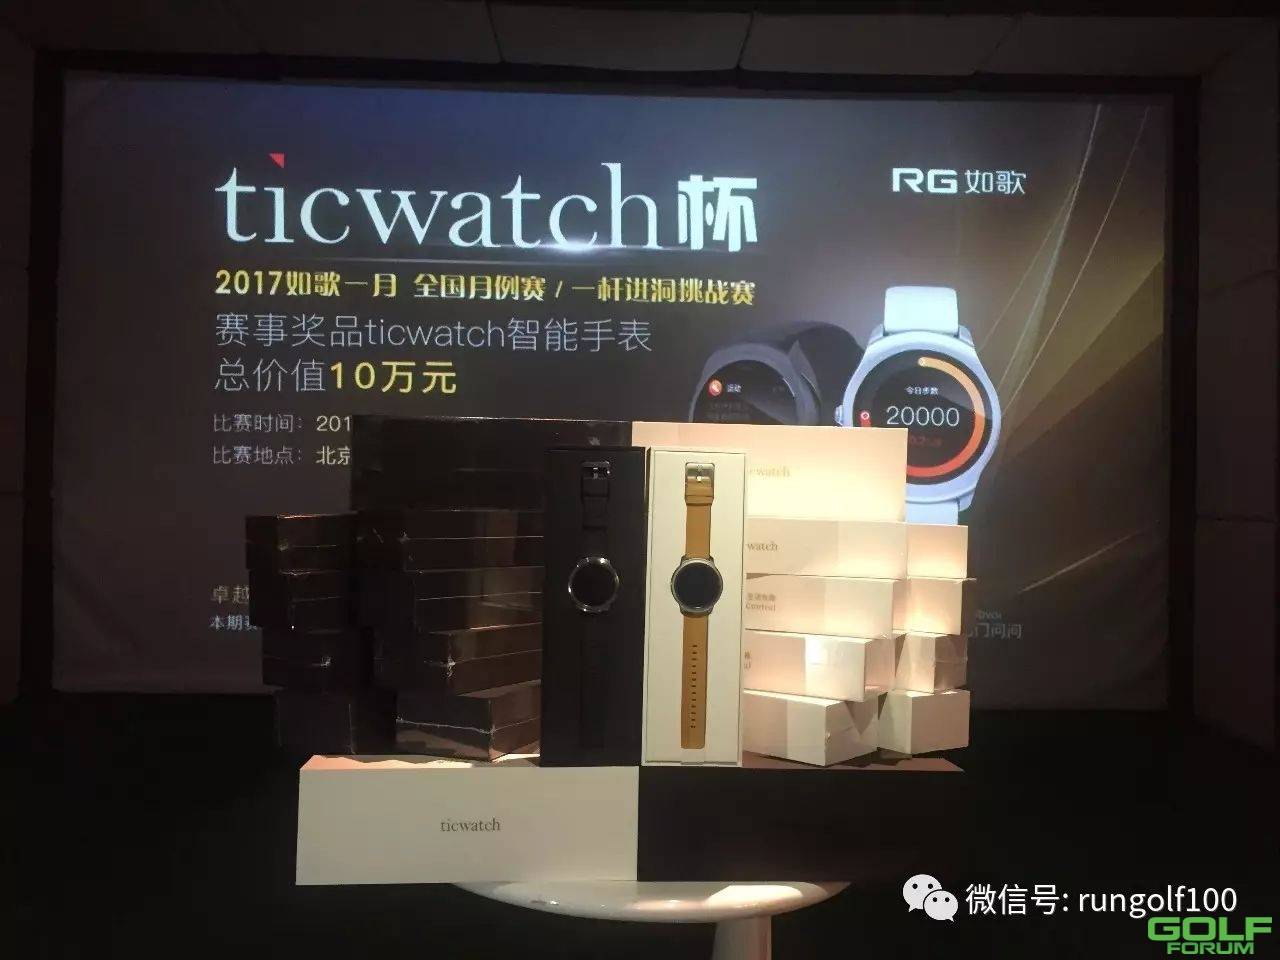 【福利】ticwatch智能手表冠名赞助如歌球场全年一杆进洞奖 ...